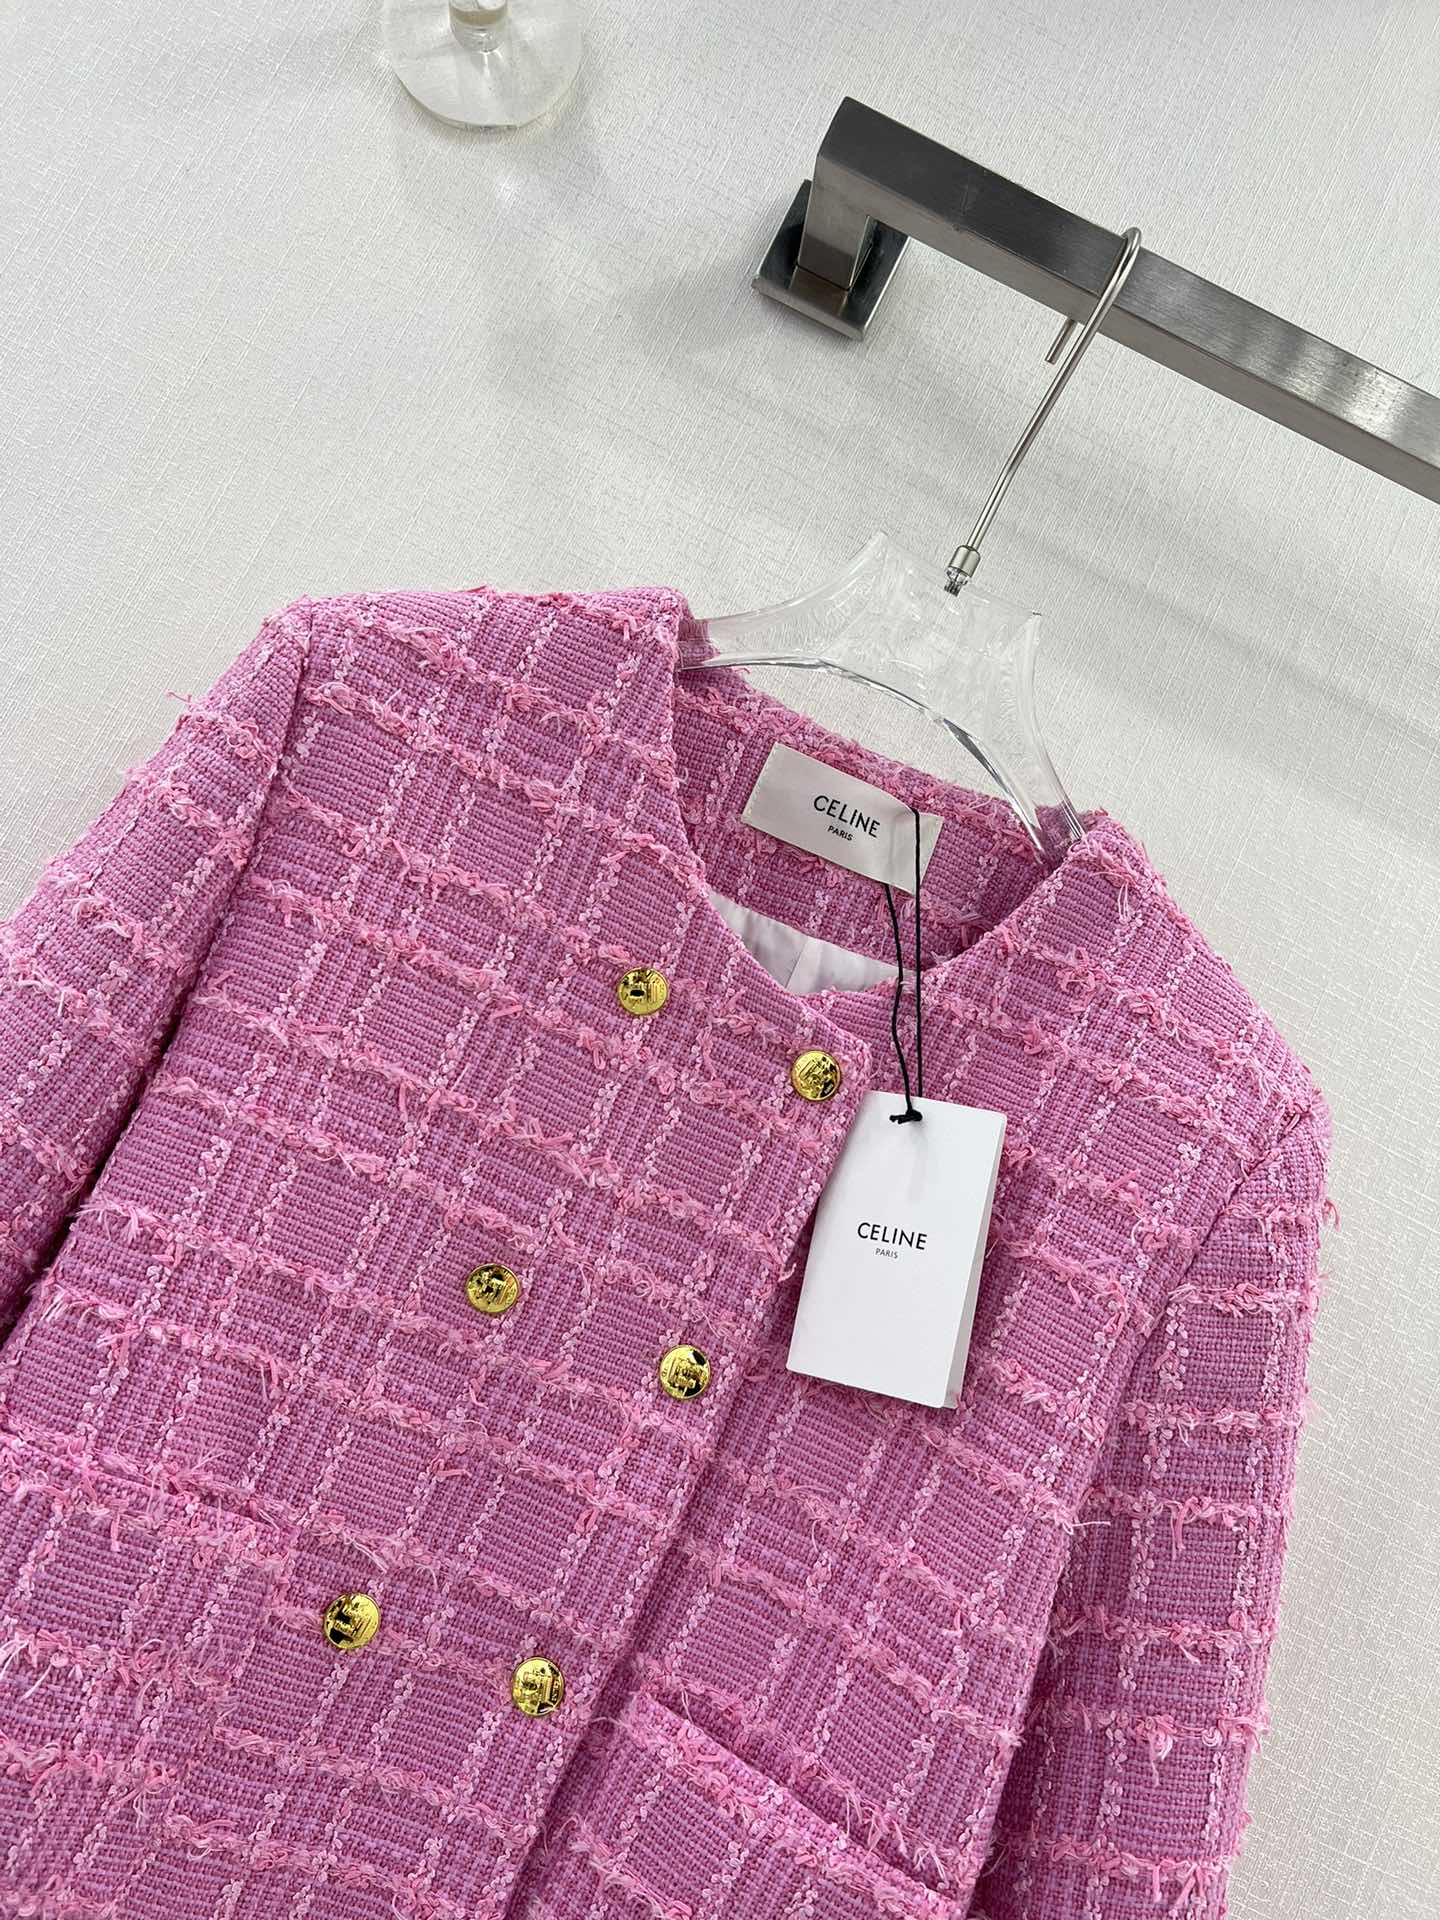 新品 セリーヌ メンズ アウターｎ級品 純綿アウター 柔らかくて暖かい ファッション ピンク_3